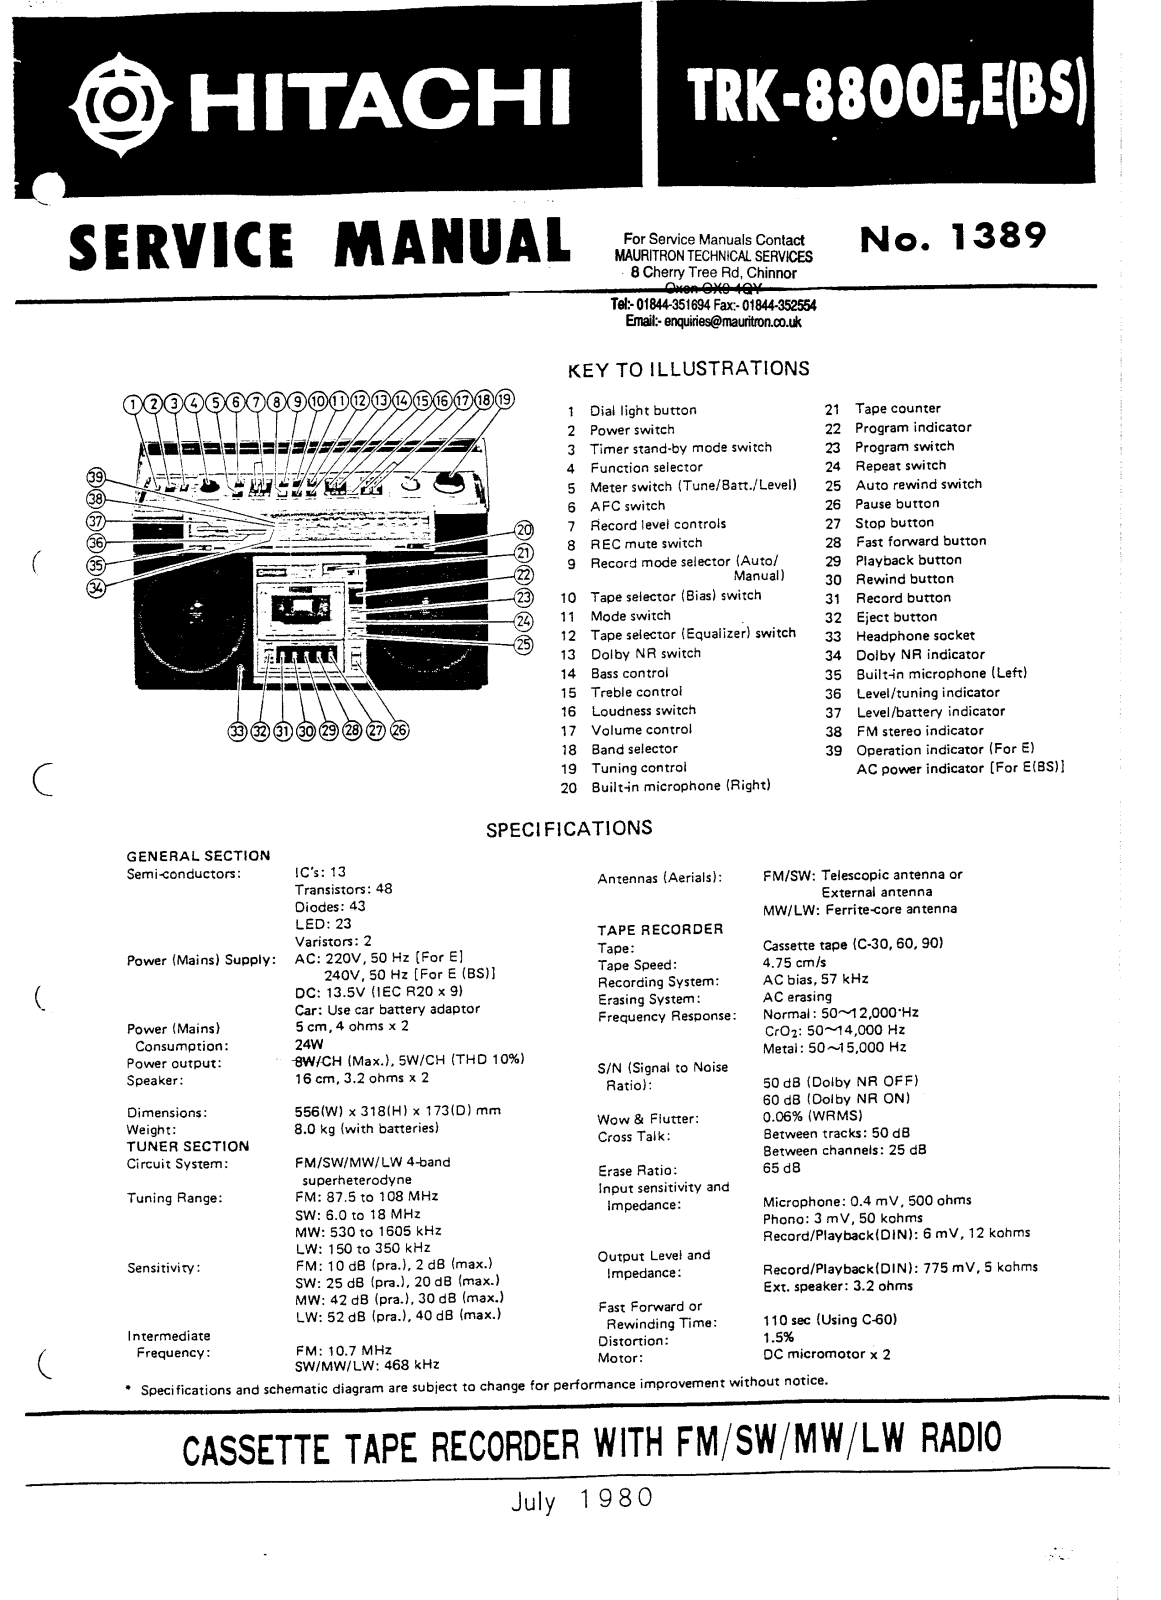 Hitachi TRK-8800E User Manual